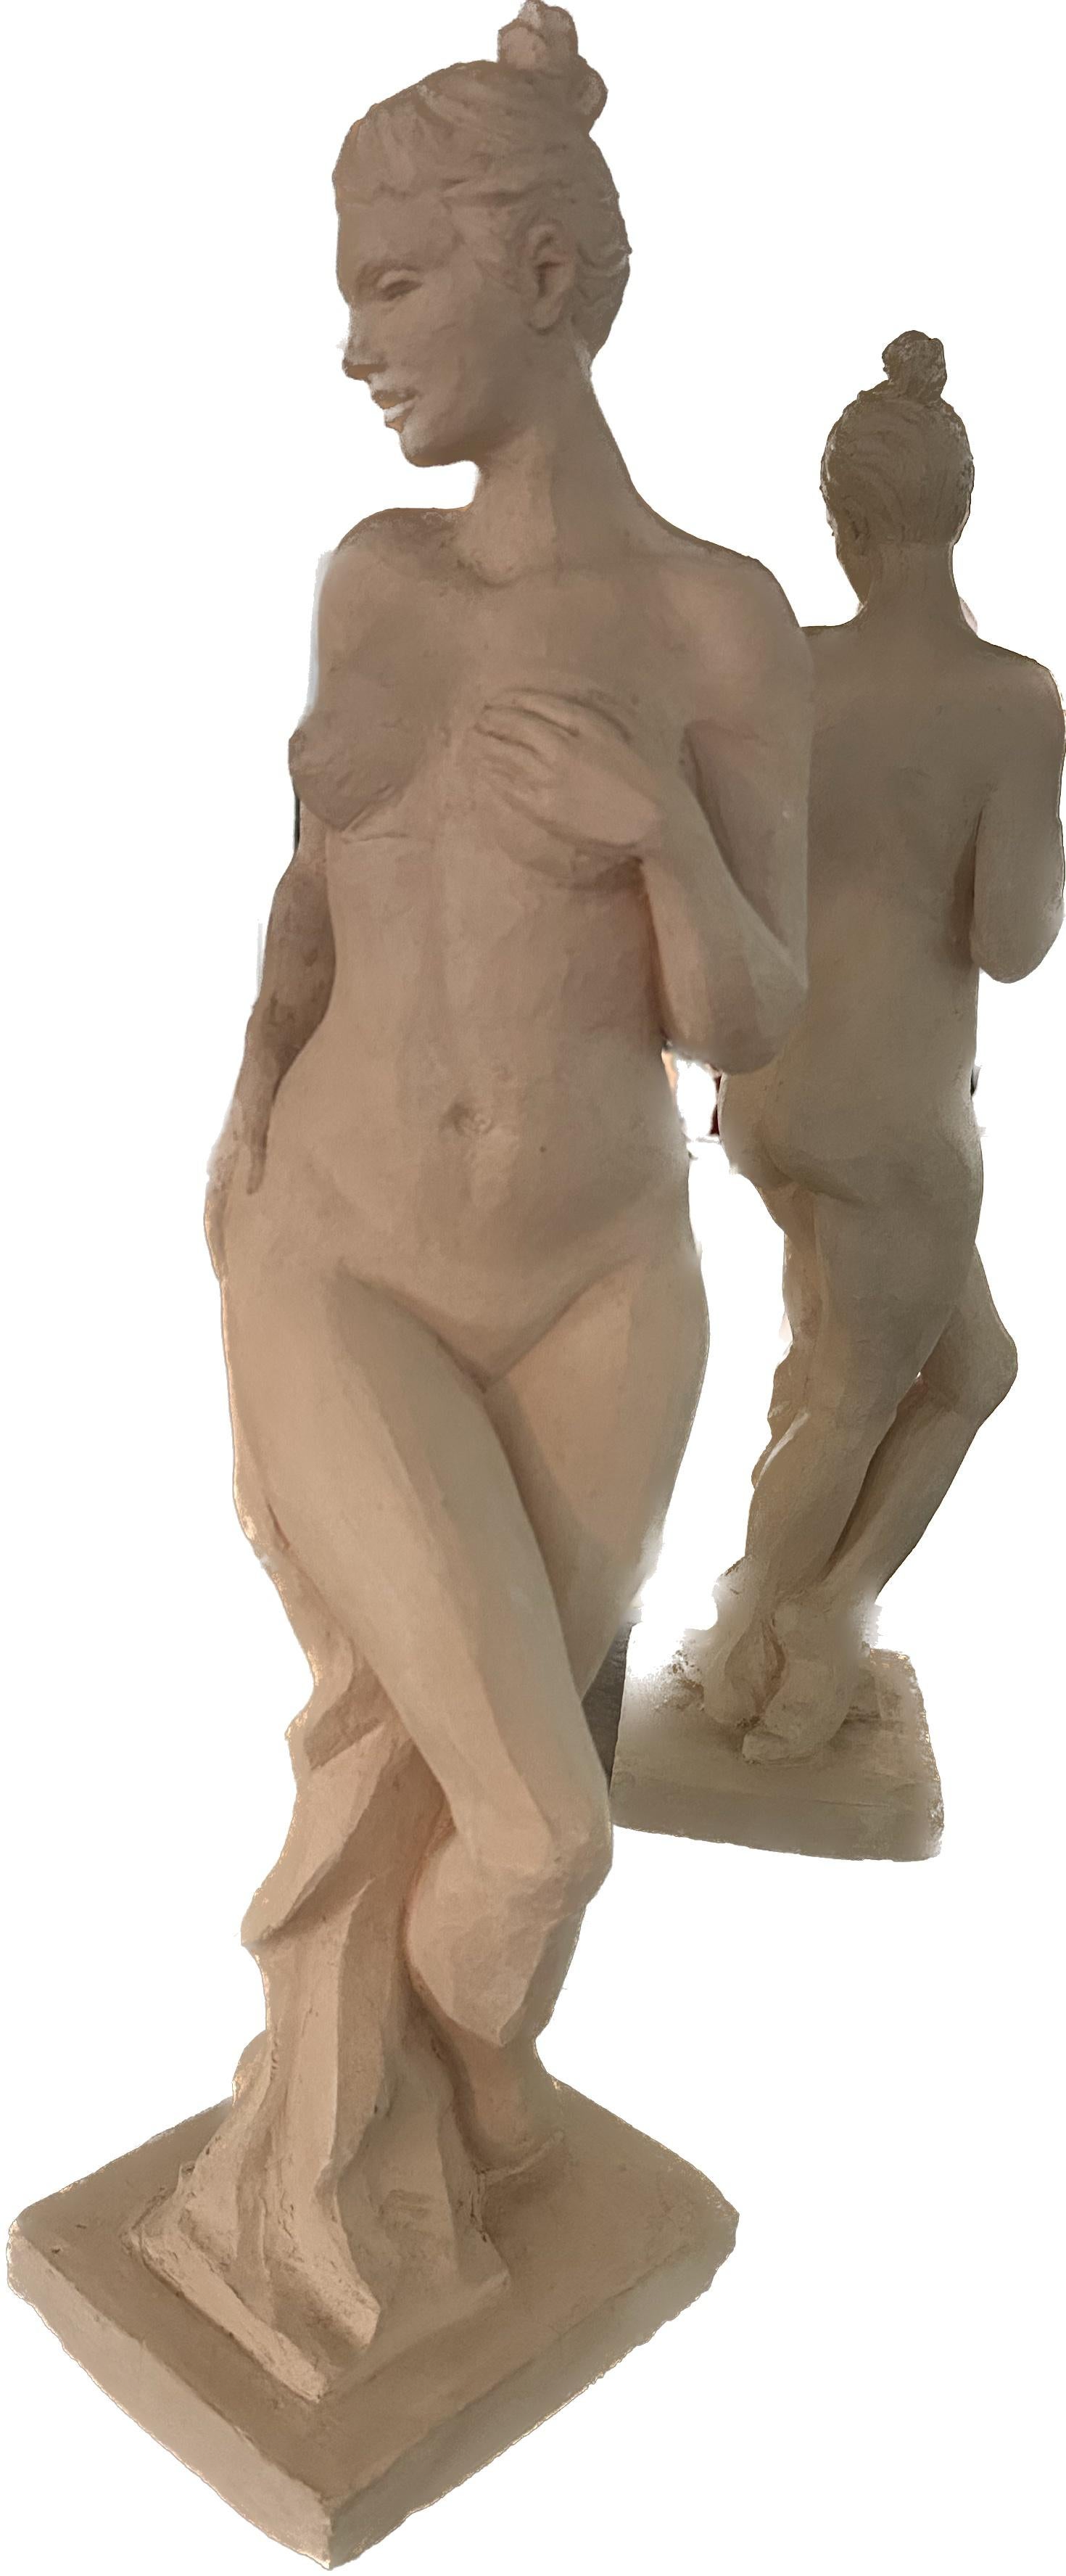 Karapet Balakeseryan  (Garo) Figurative Sculpture – Aktfigur, Skulptur, Keramik, handgefertigt von Garo, Unikat, Keramik